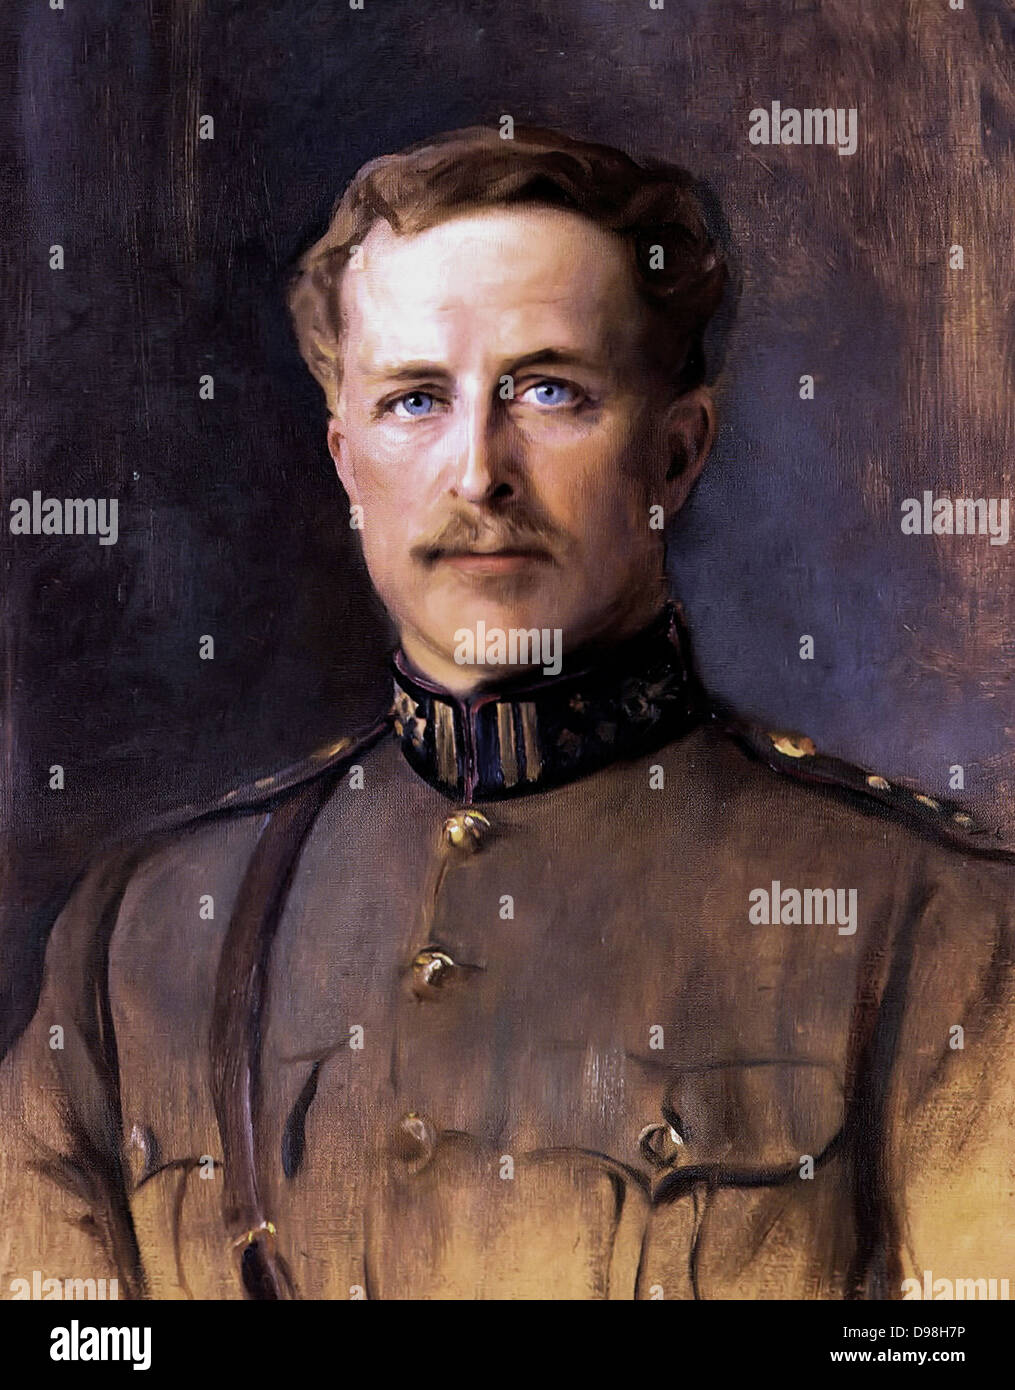 Albert I (8 aprile 1875 - 17 febbraio 1934) aveva regnato come re dei Belgi dal 1909 fino al 1934. Foto Stock